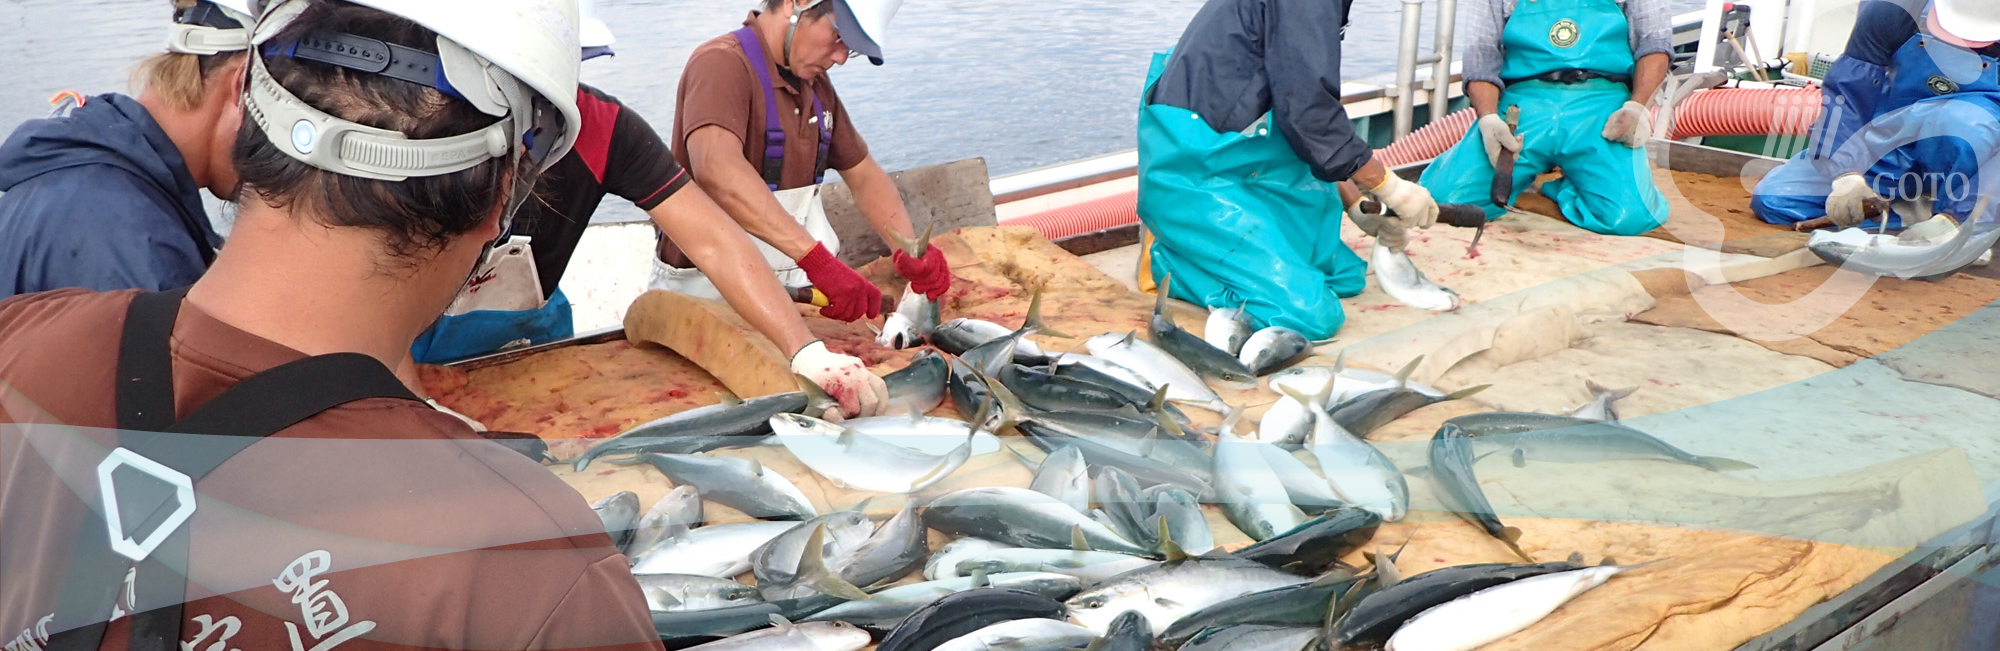 五島の秋の魚 五島の旬の魚 長崎県 五島漁業協同組合 五島漁協公式サイト